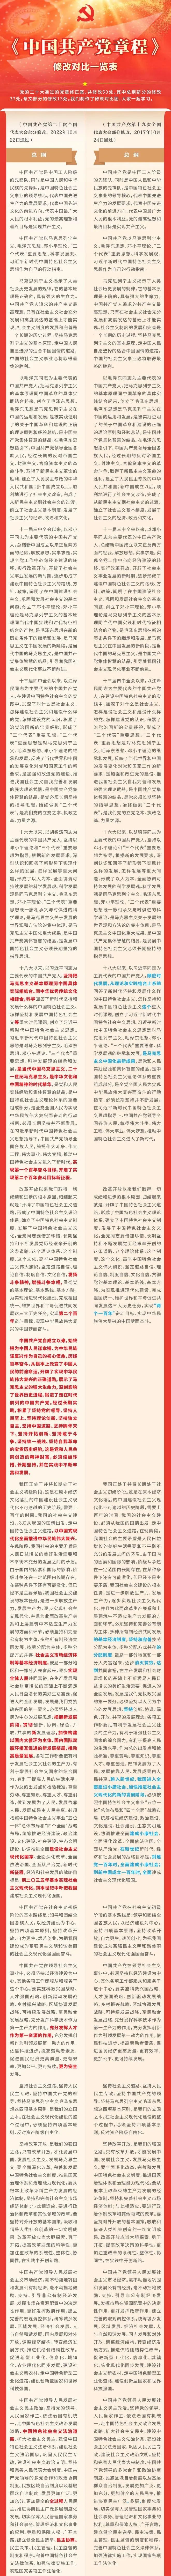 9.学习二十大 《中国共产党章程》修改对比一览表.jpg